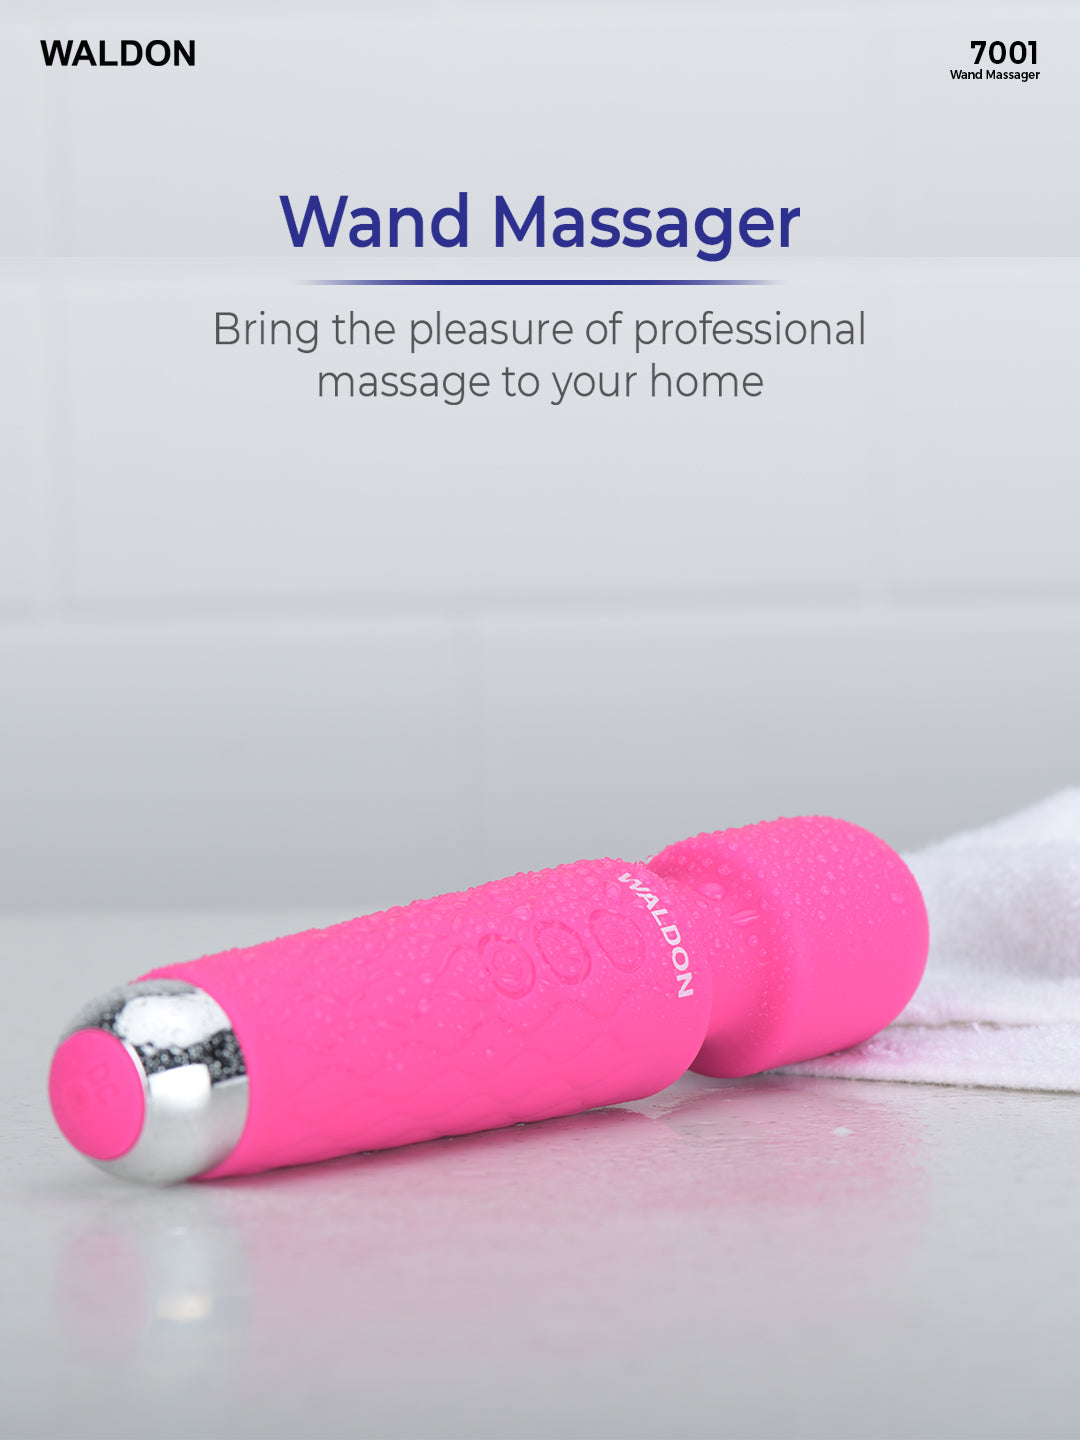 Waldon Wand Massager Pink